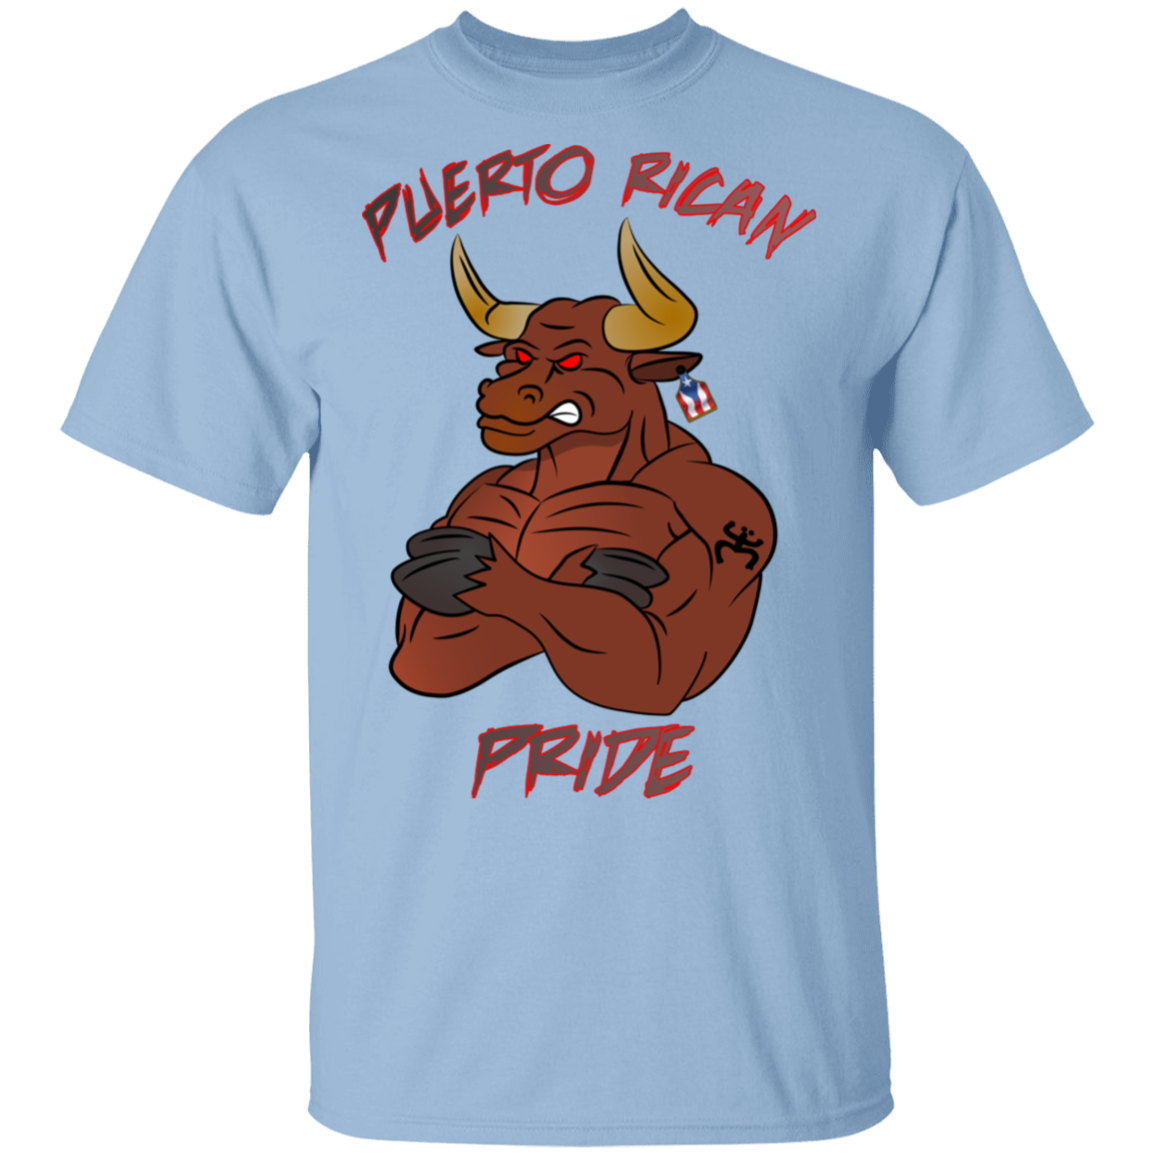 Puerto Rican Pride, No Bull 5.3 oz. T-Shirt - Puerto Rican Pride